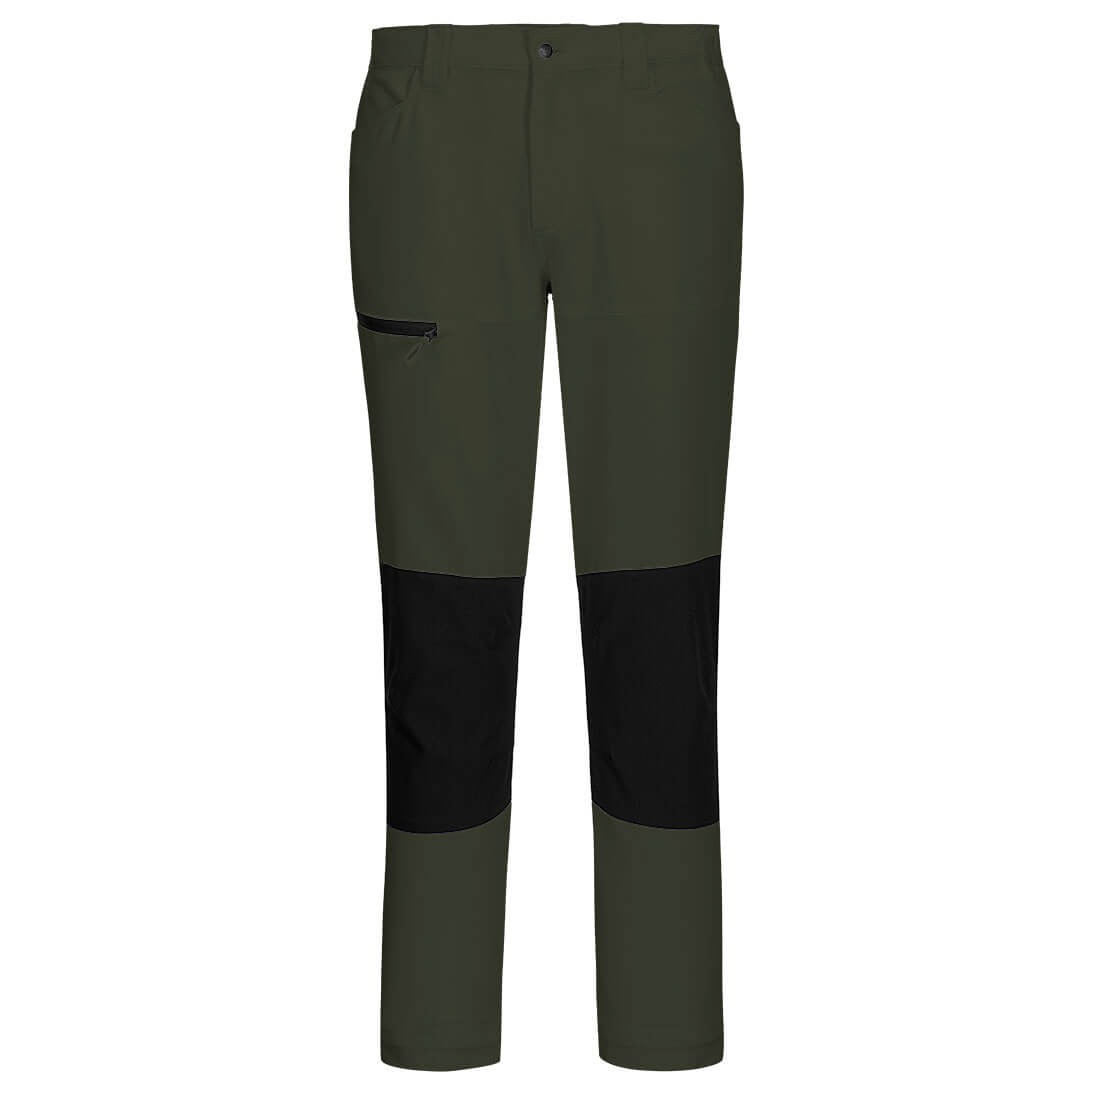 Pantalon de travail WX2 Stretch - Les vêtements de protection